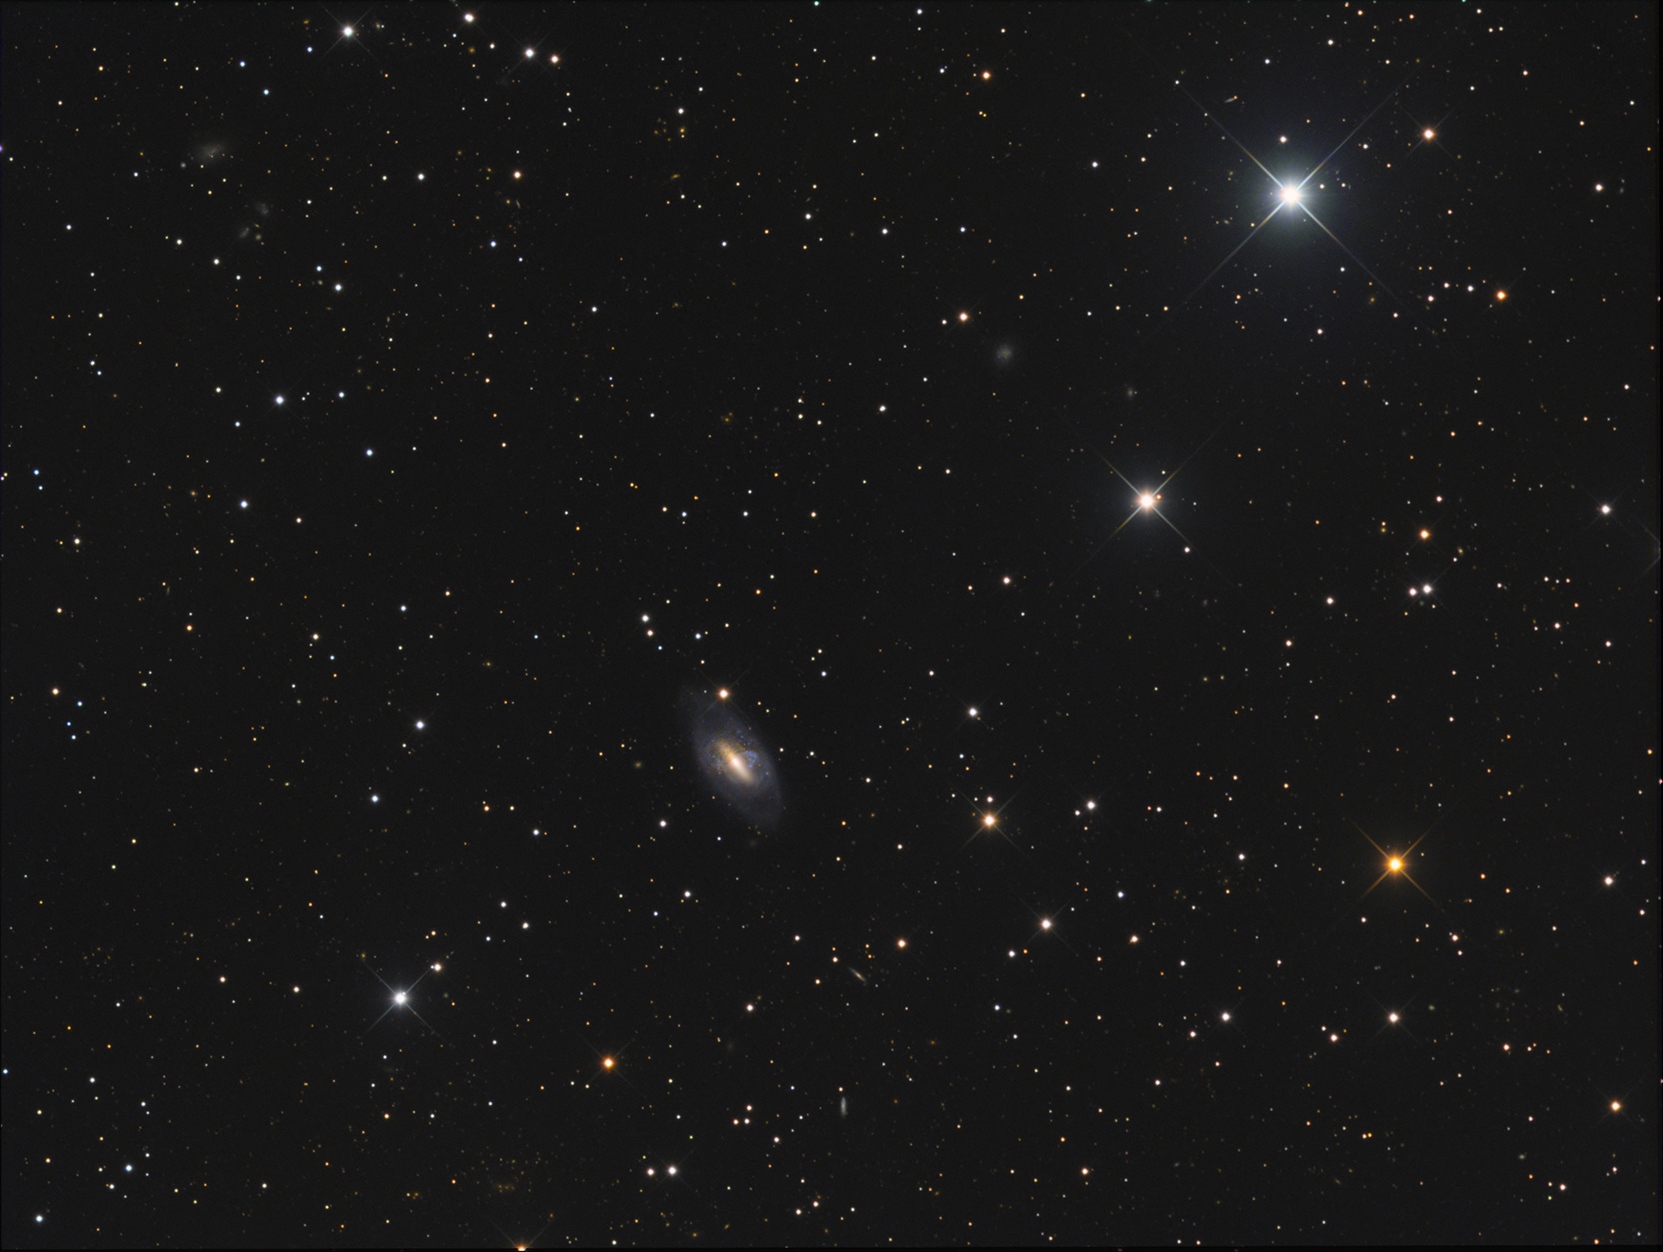 NGC 2685